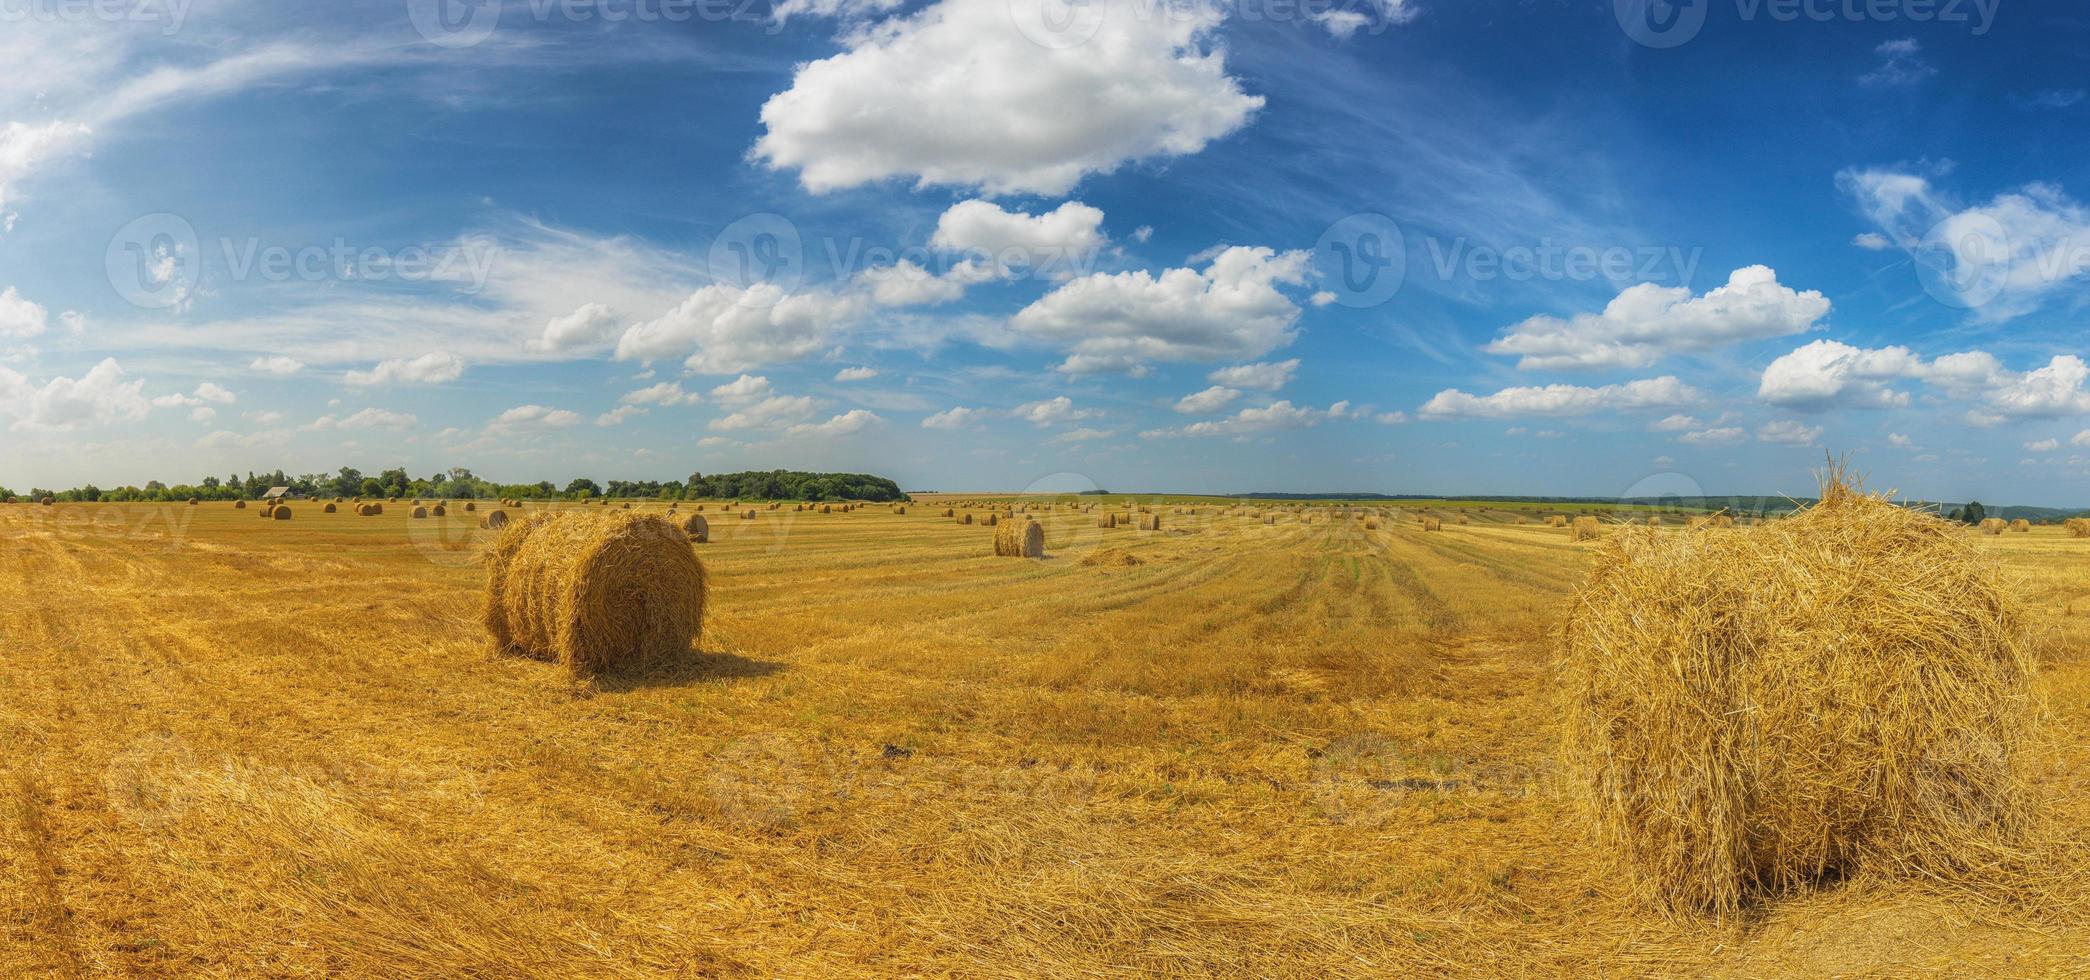 zomer veld- met rietje maait Bij daglicht breed panoramisch schot foto